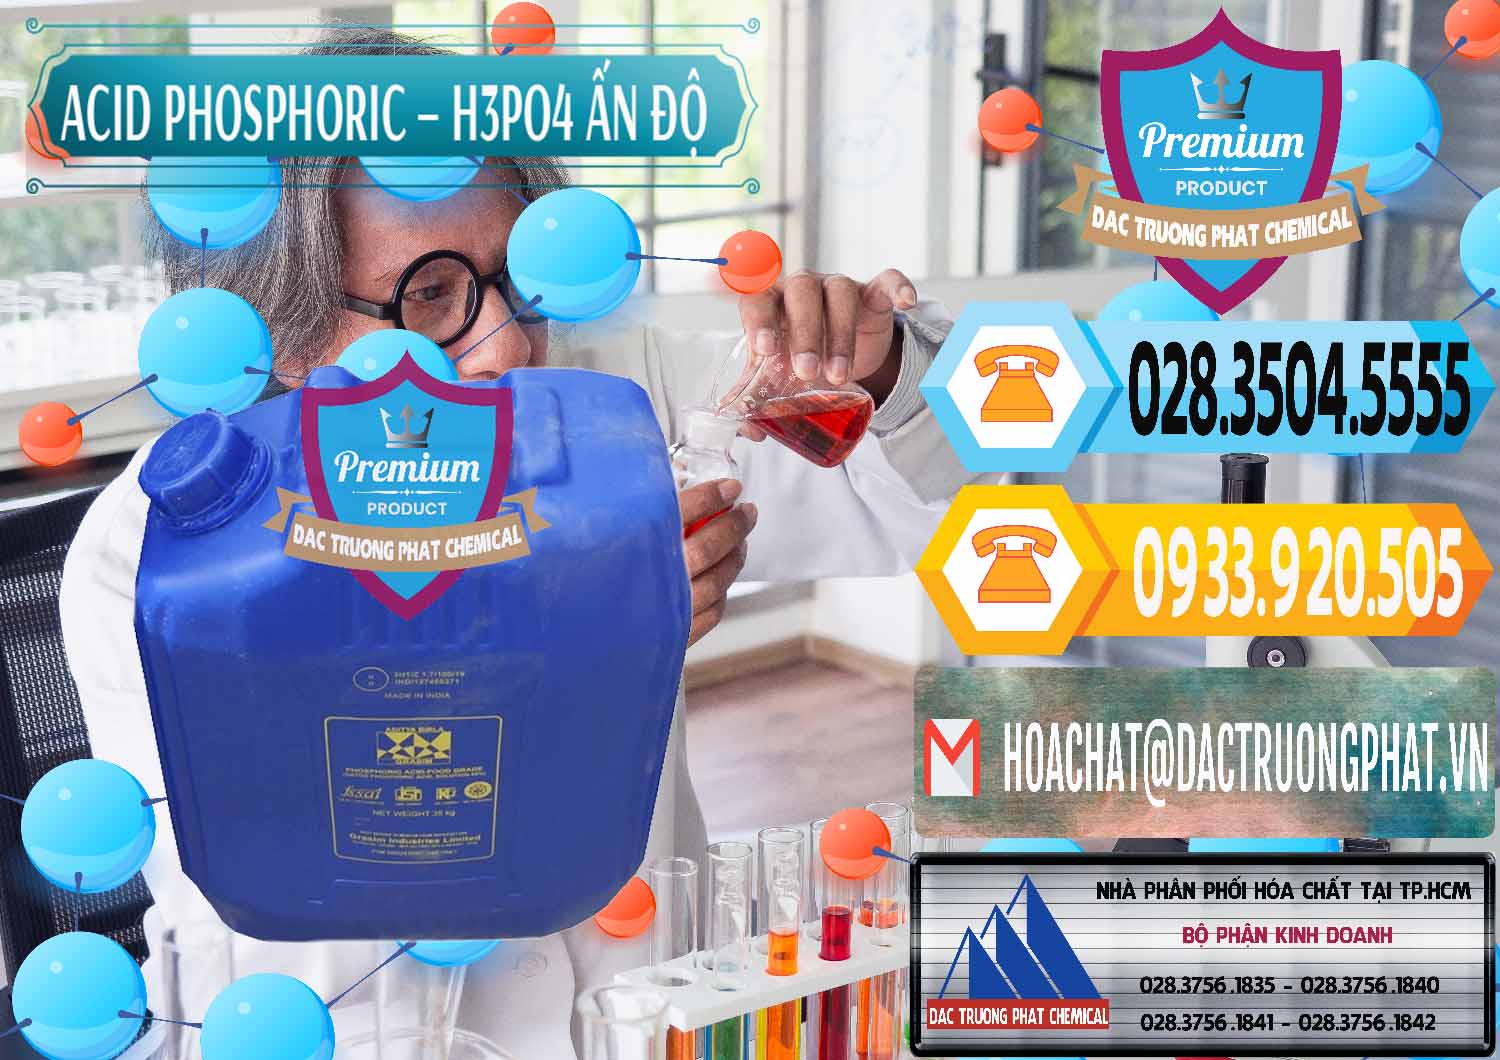 Đơn vị chuyên nhập khẩu & bán Axit Phosphoric H3PO4 85% Ấn Độ - 0350 - Nơi chuyên bán ( phân phối ) hóa chất tại TP.HCM - hoachattayrua.net